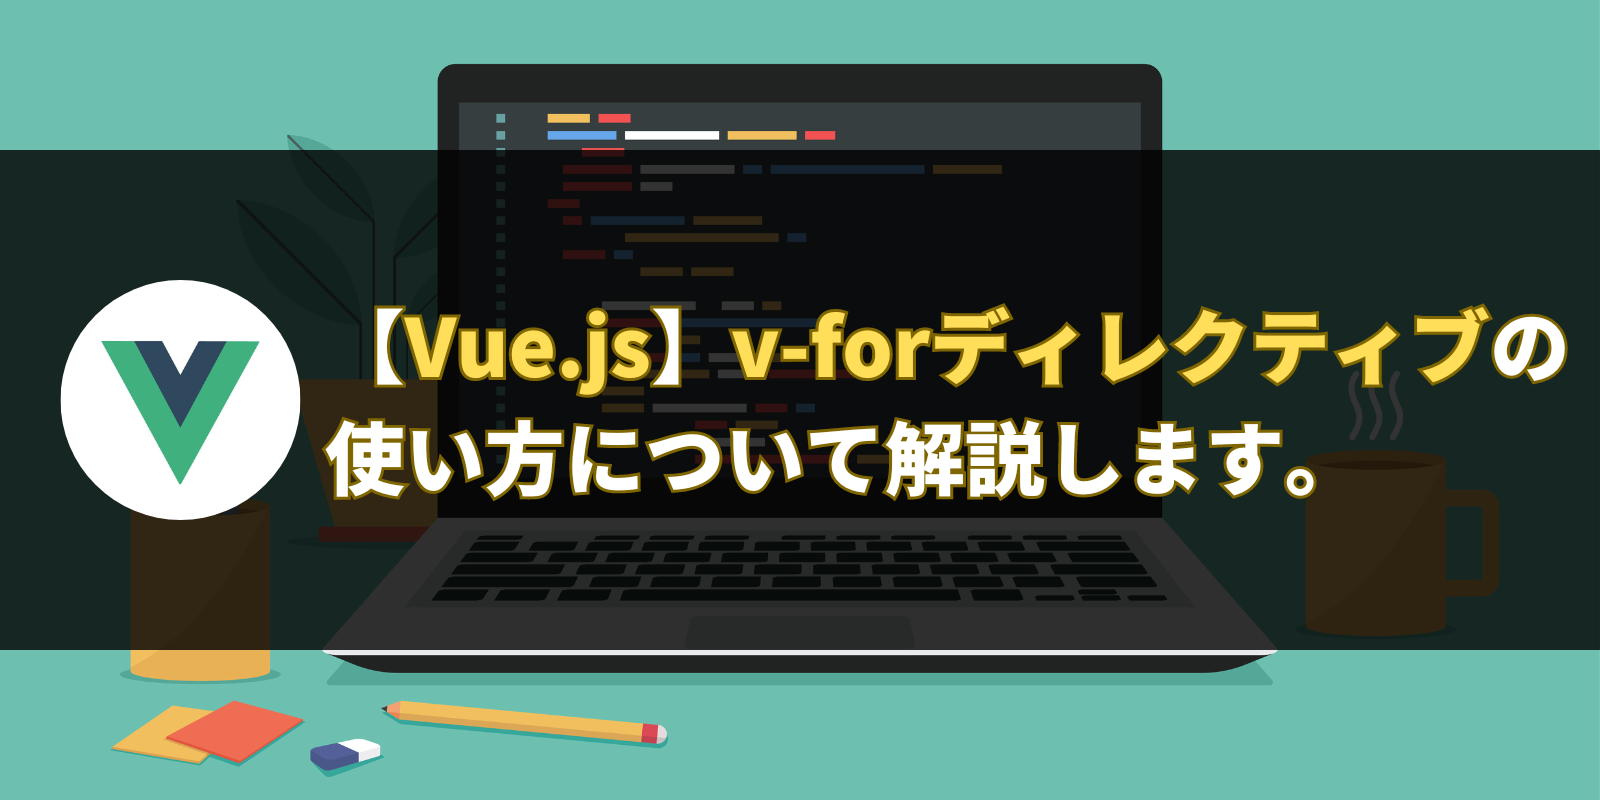 【Vue.js】v-forディレクティブの使い方について解説します。